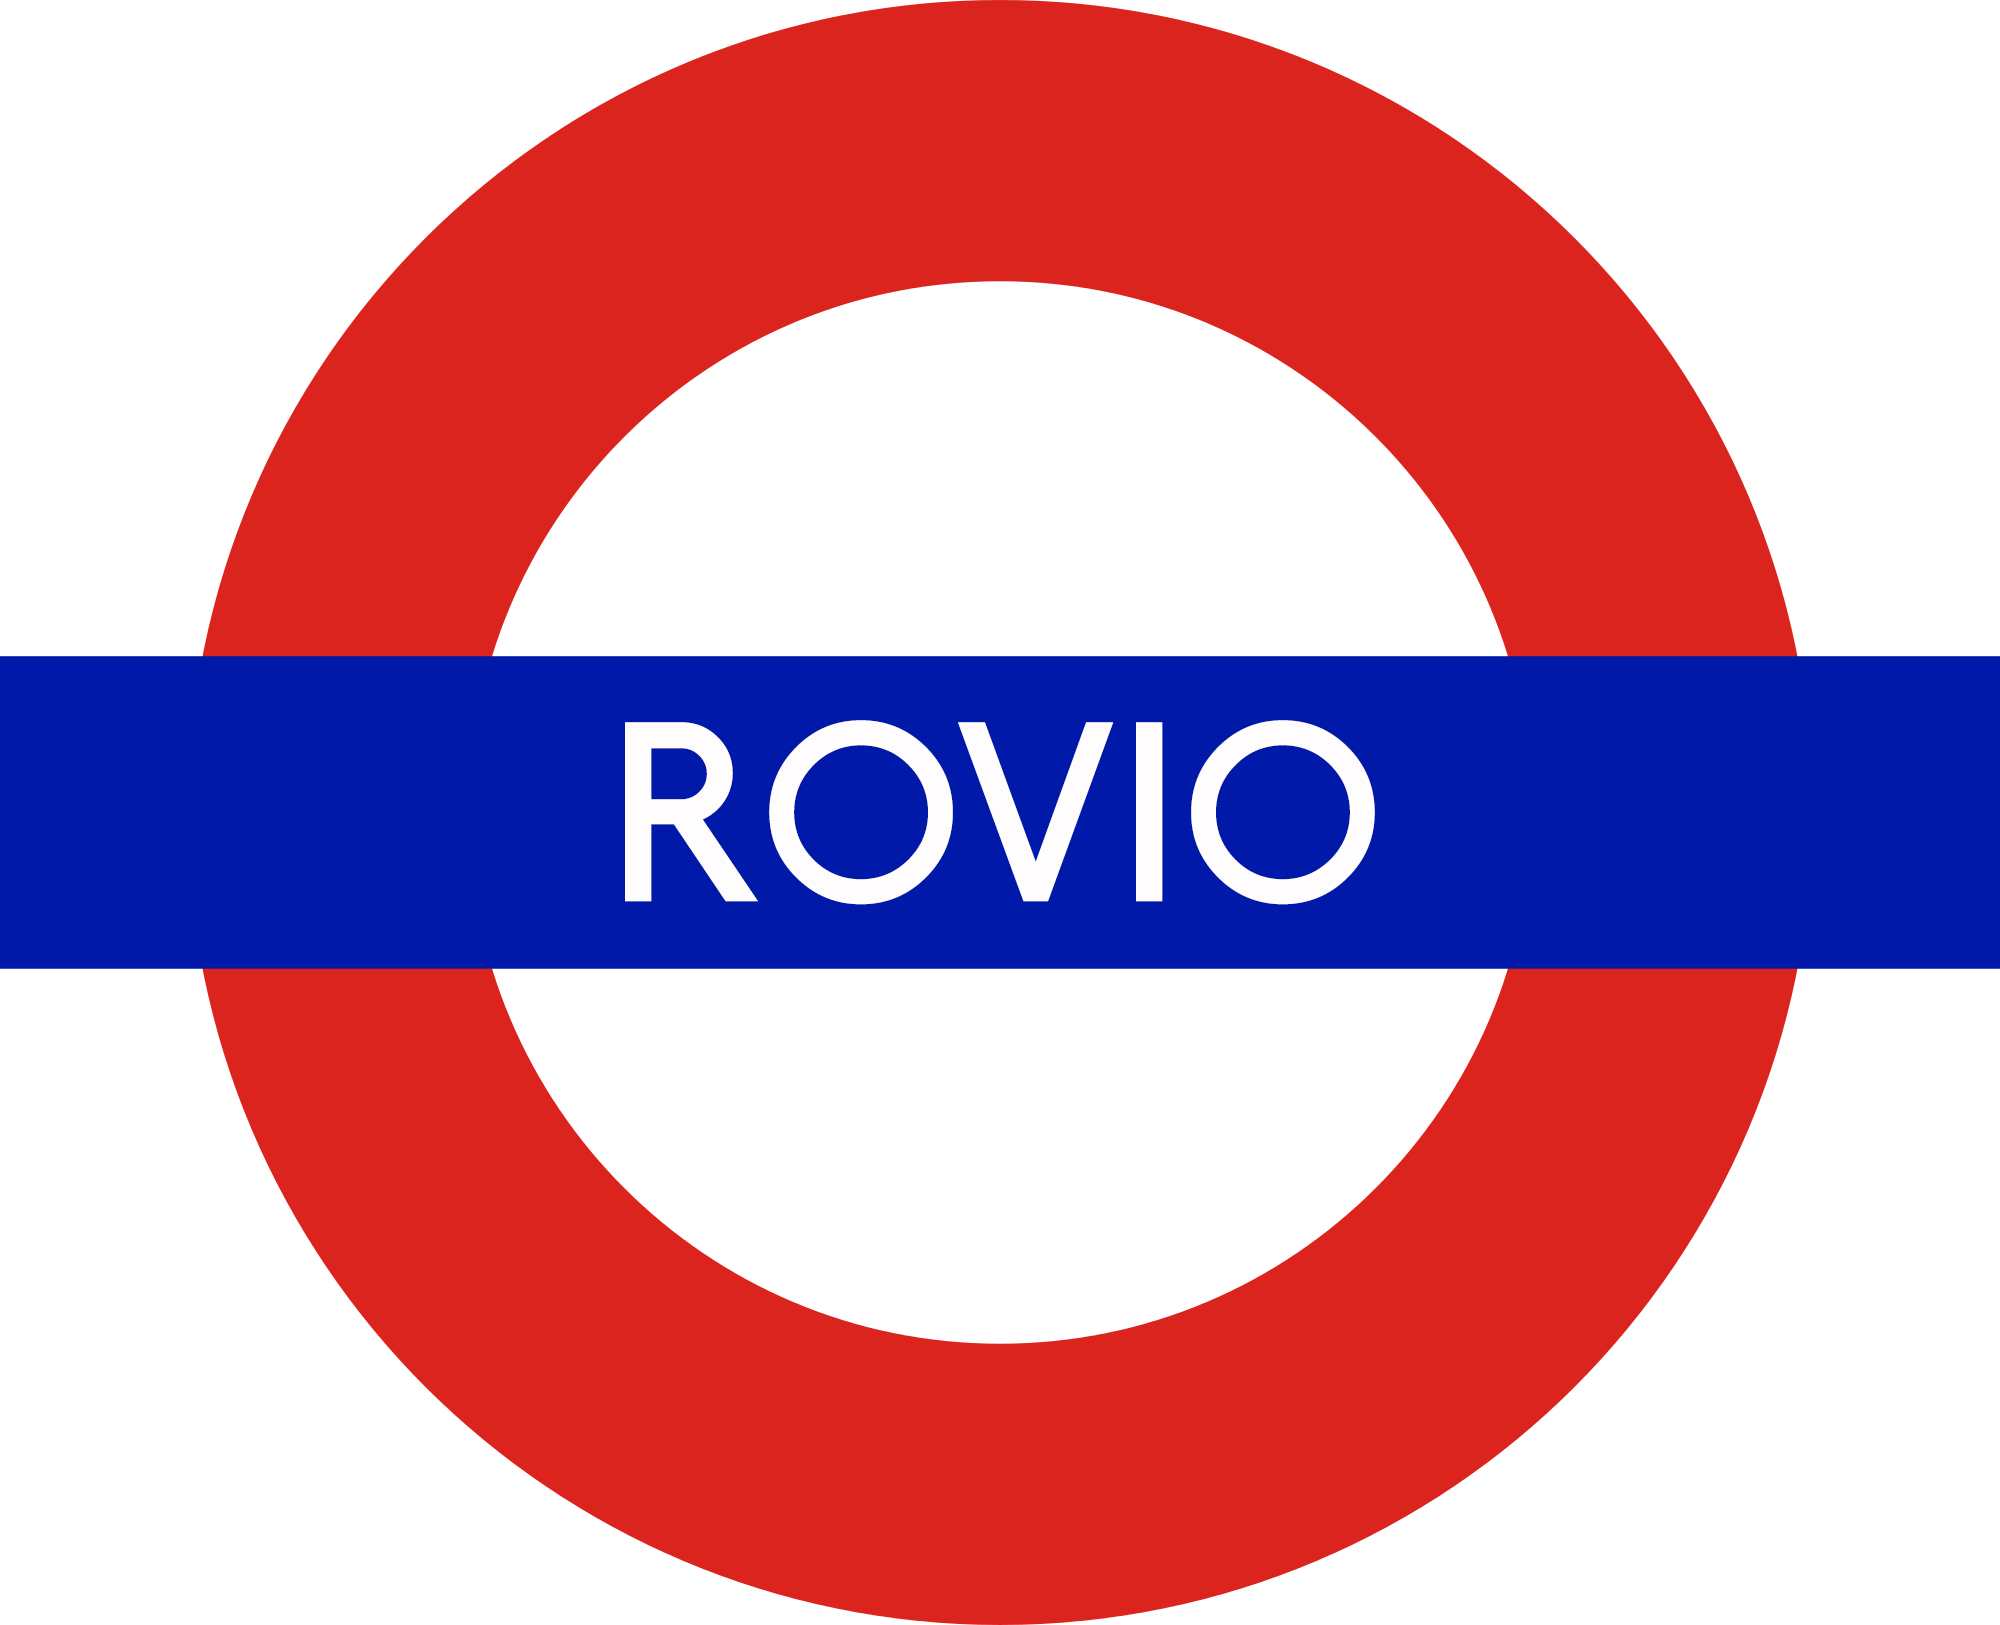 Rovio Logo - Rovio opens new game studio in London | Rovio.com